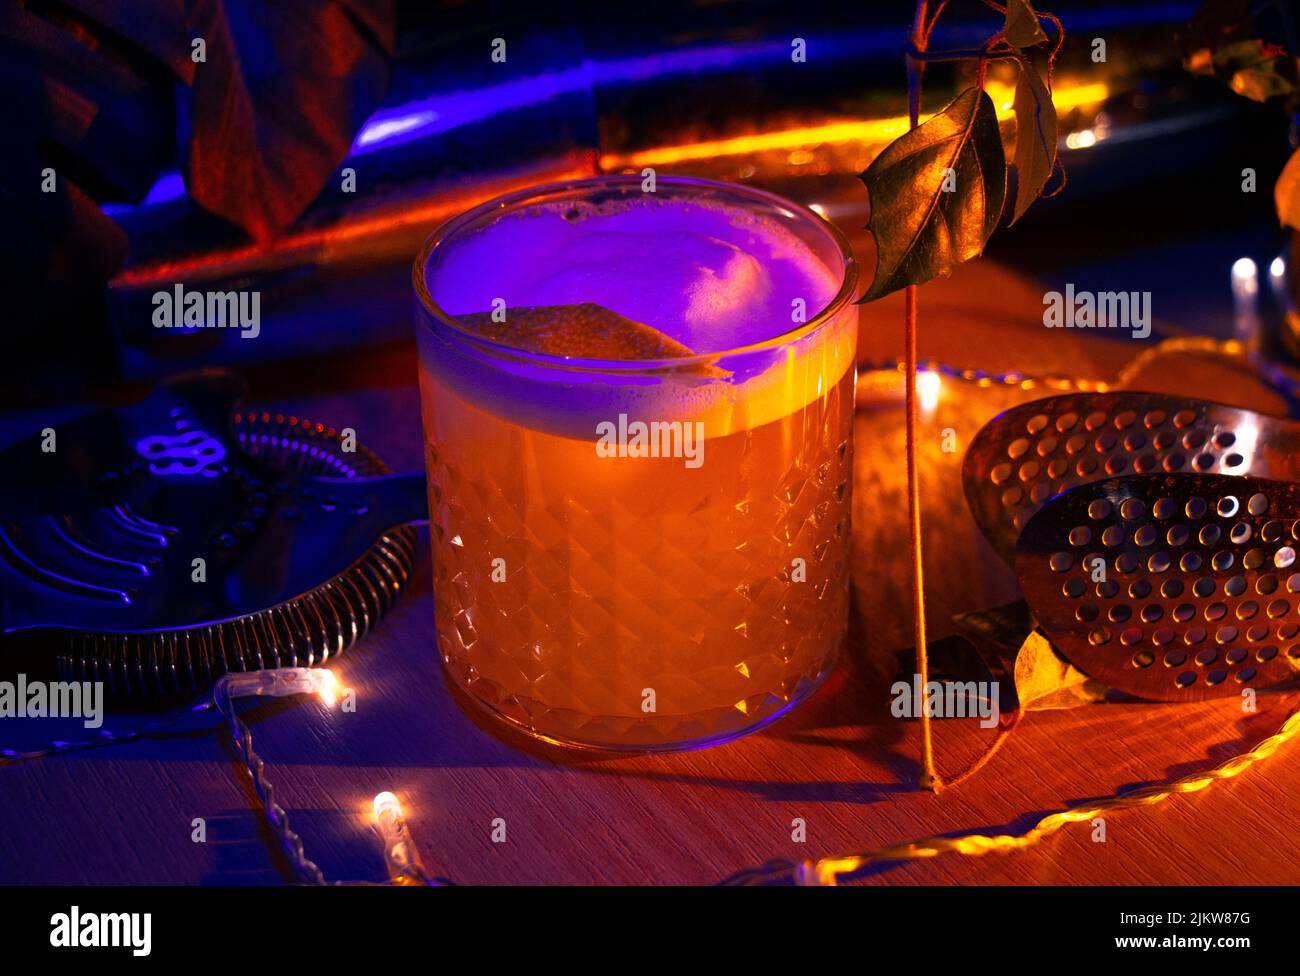 A closeup of a gin fizz cocktail, lemon twist garnish, and bar equipment under neon light Stock Photo